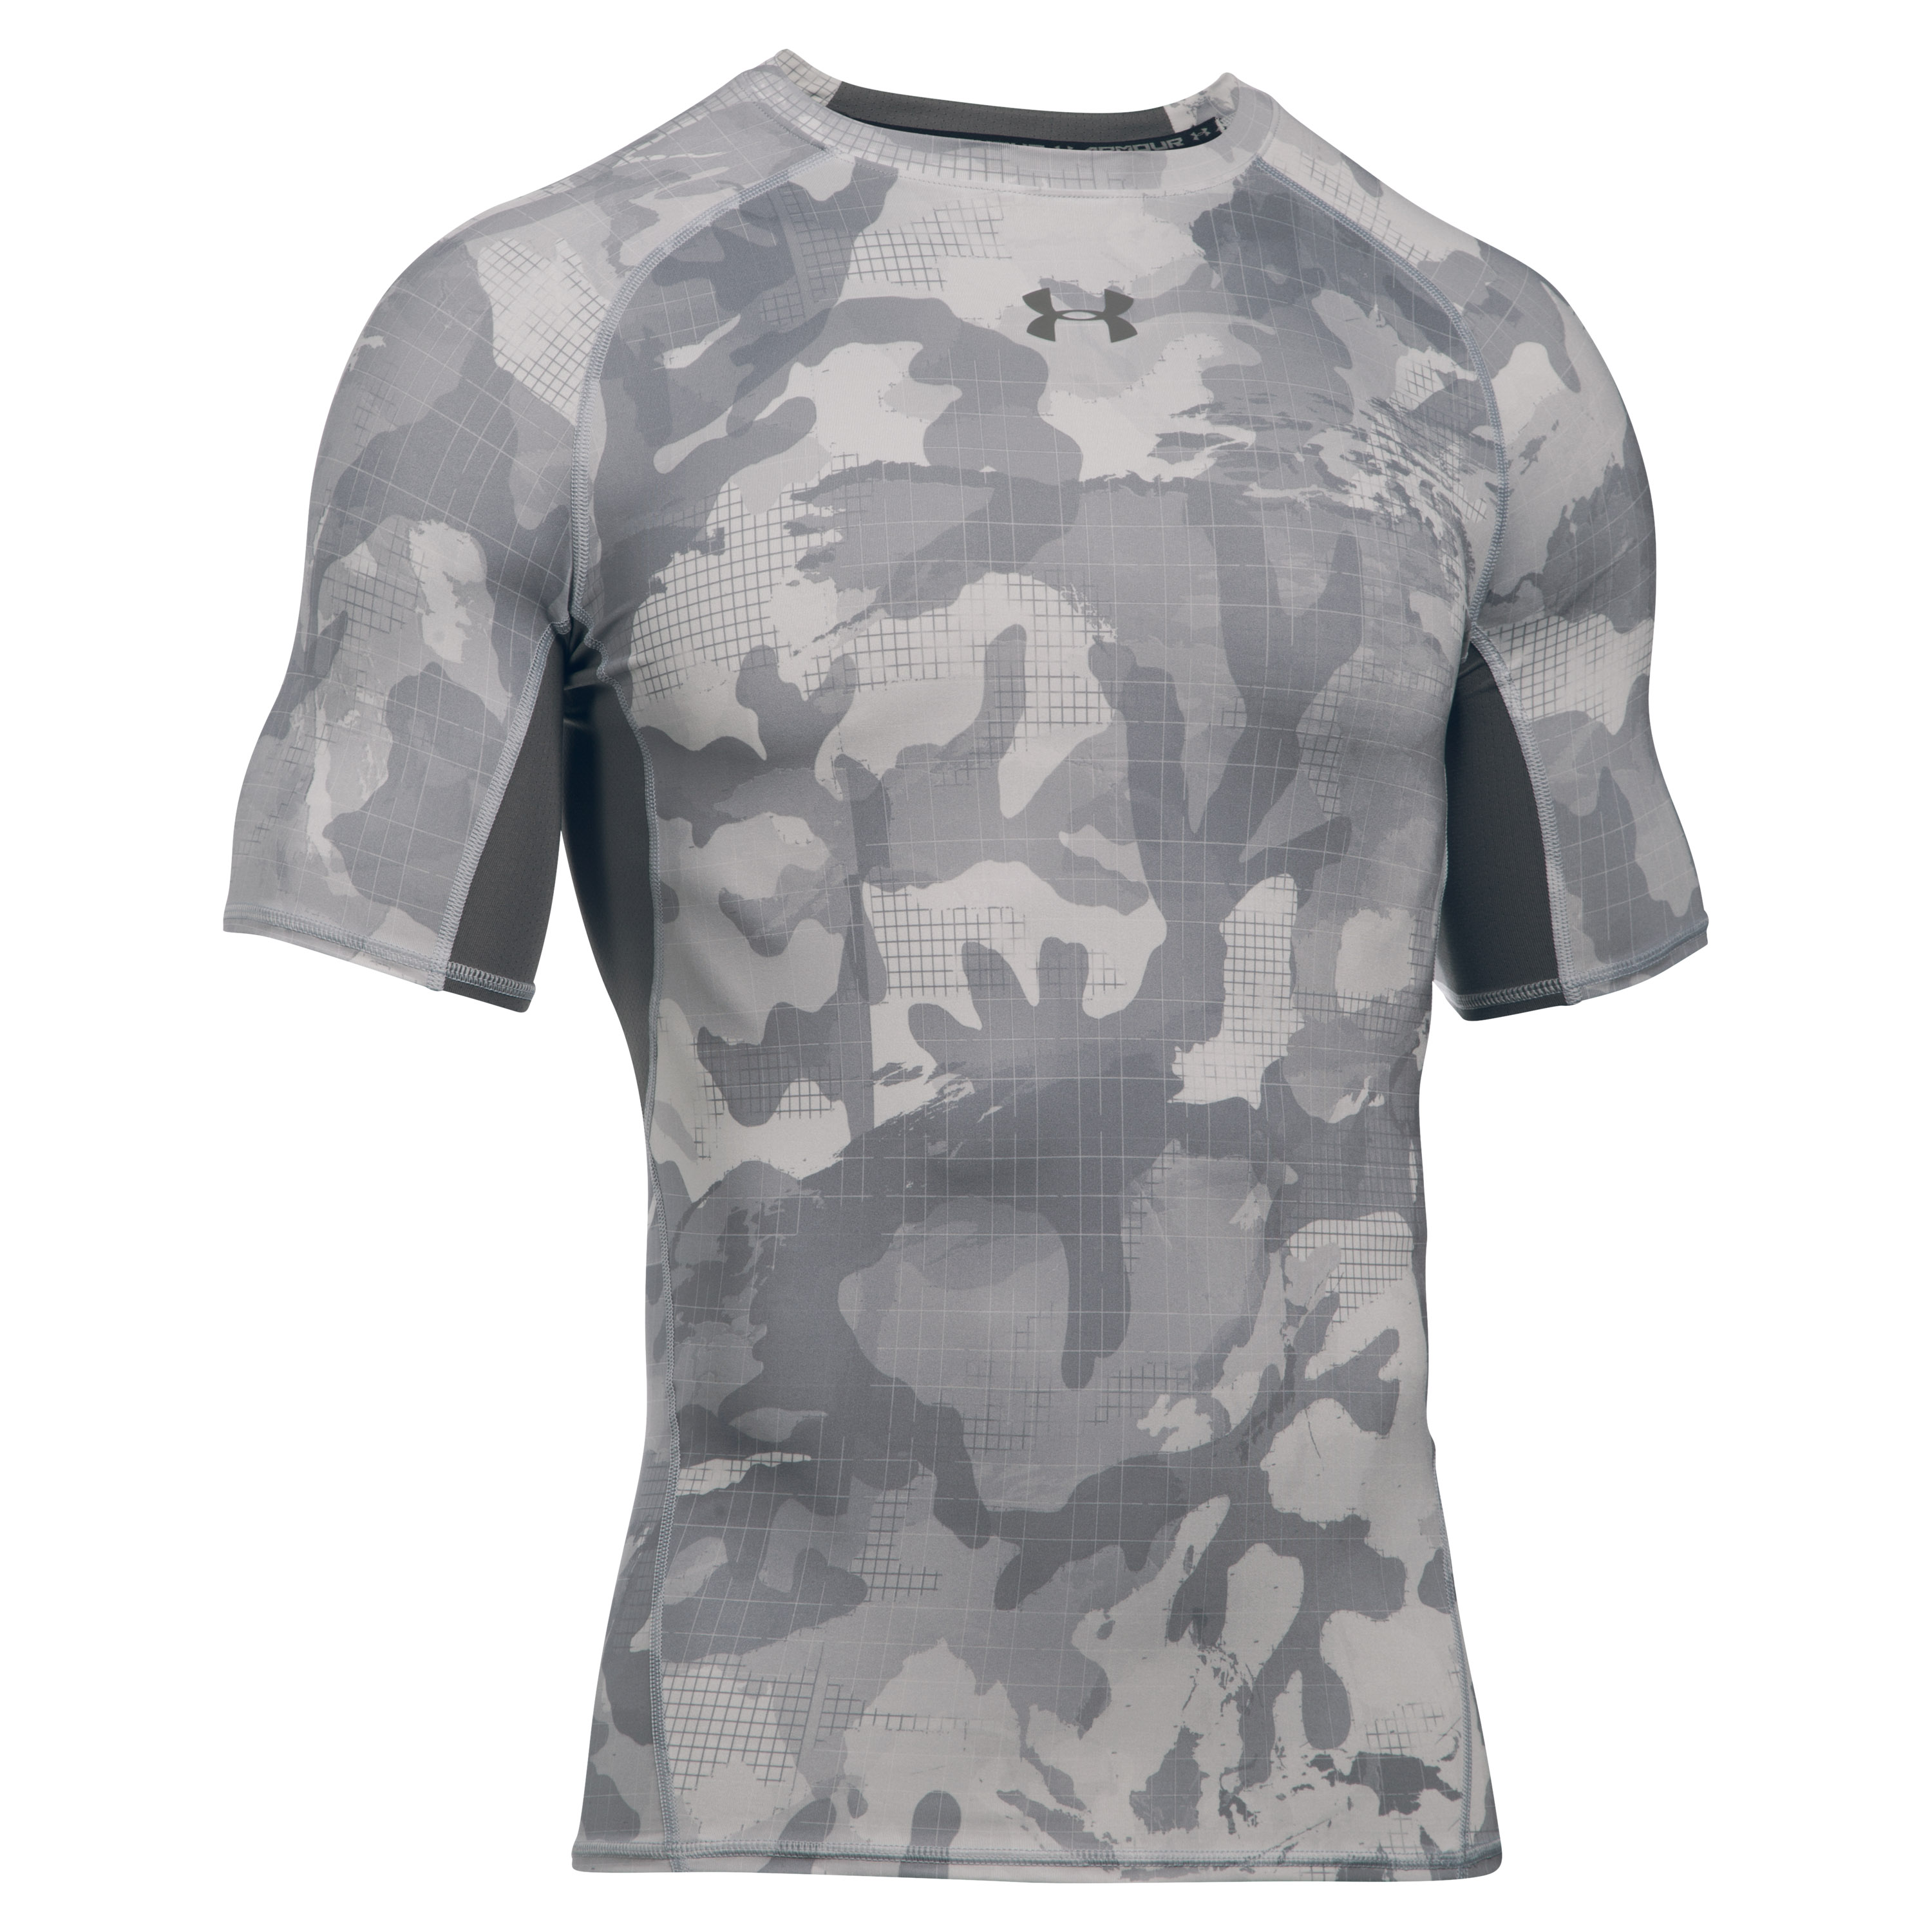 Under Armour Compression Shirt HeatGear gray camo